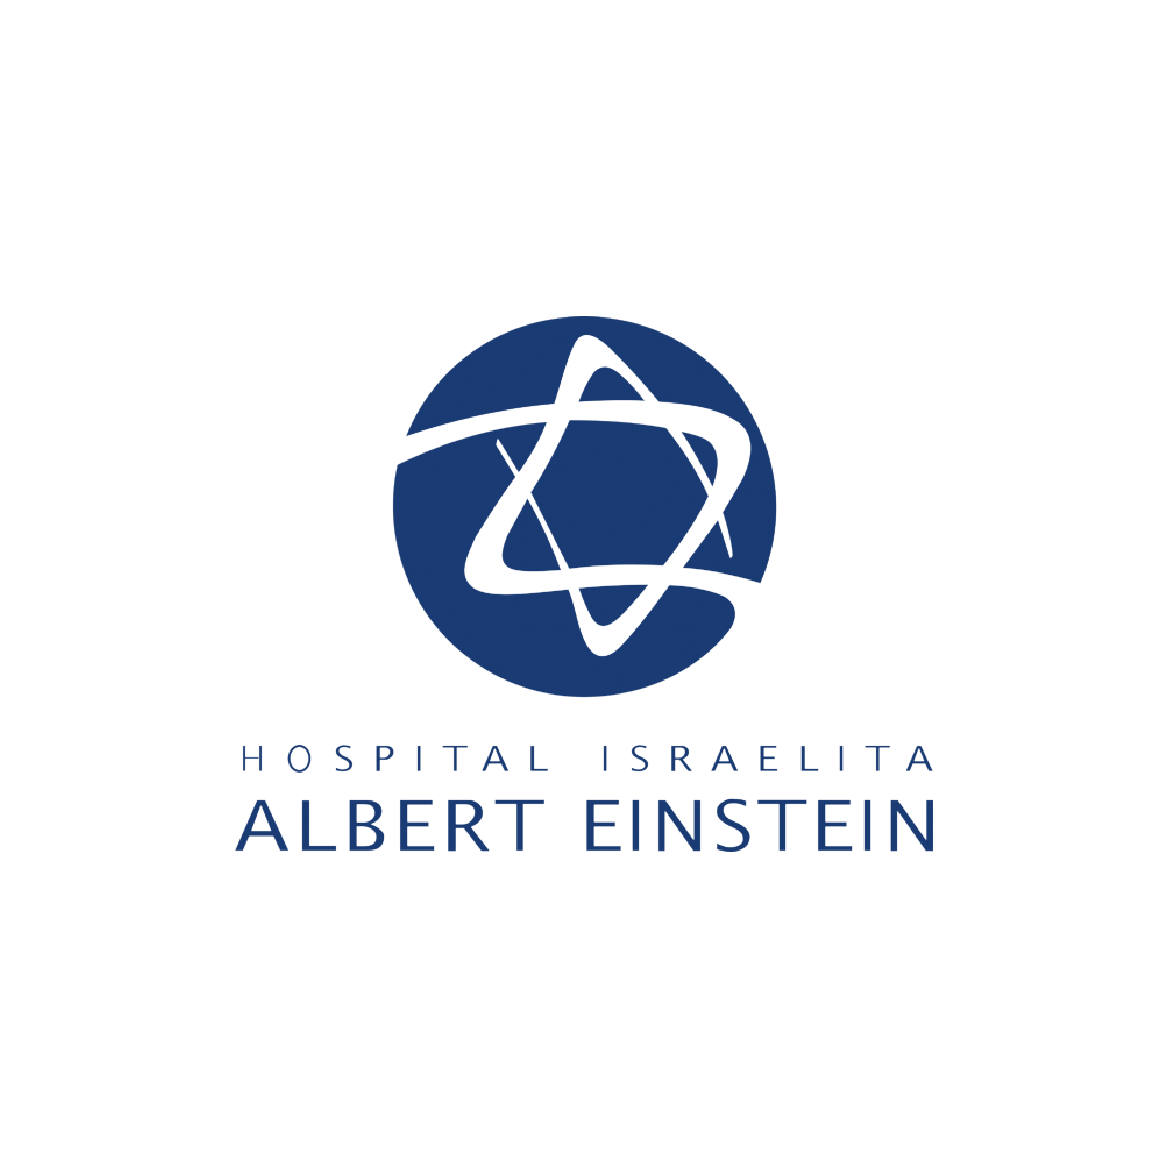 Albert Einstein Hospital